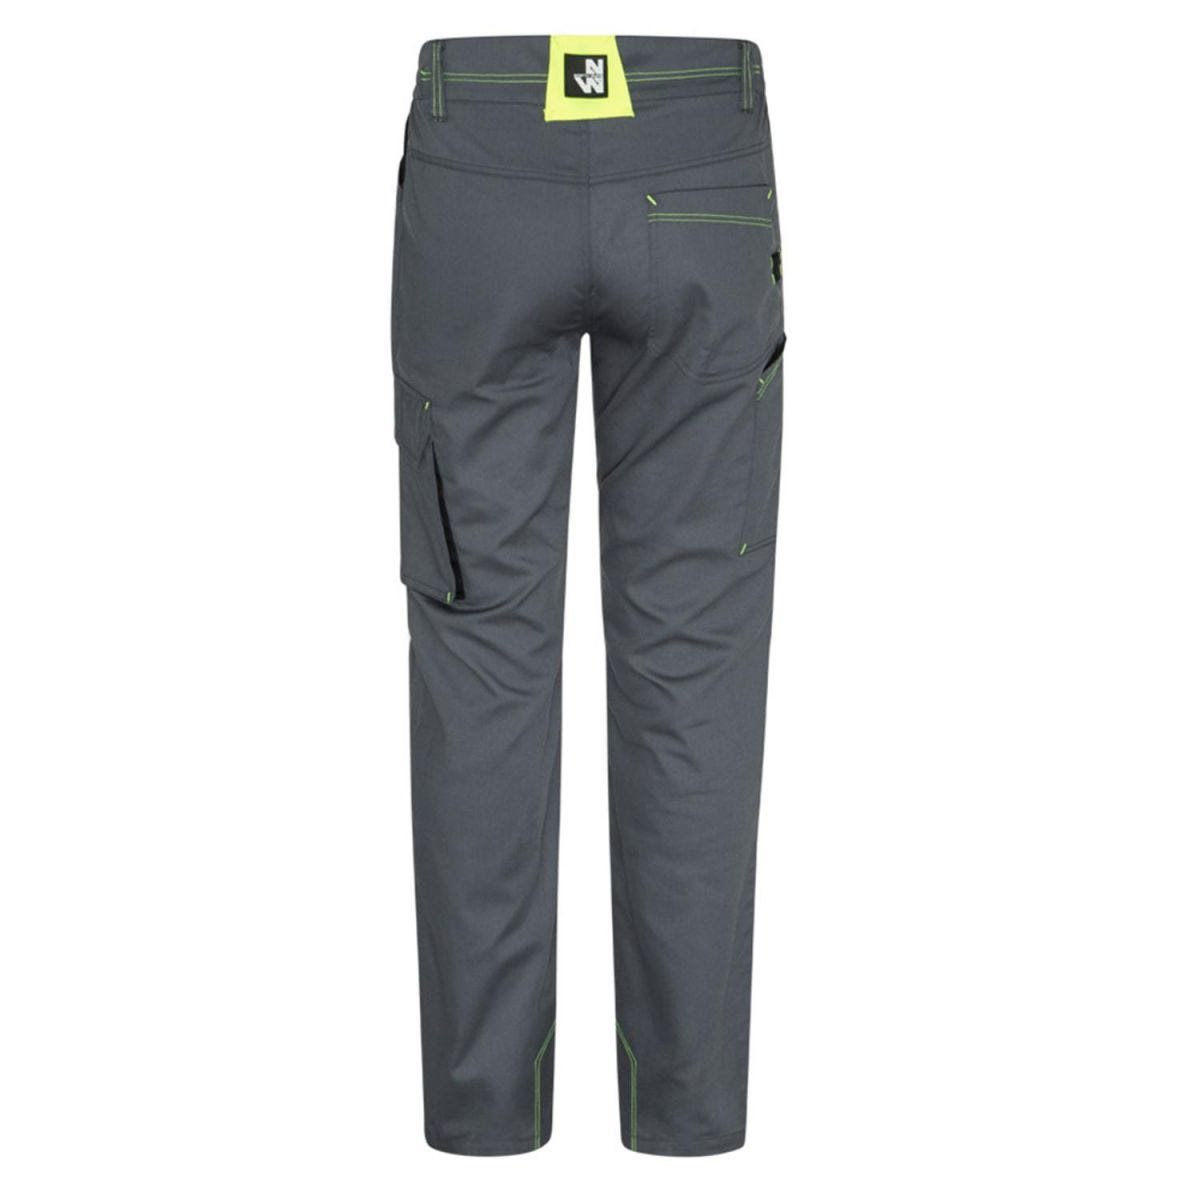 Pantalon Marlow gris et jaune fluo - North Ways - Taille M 2